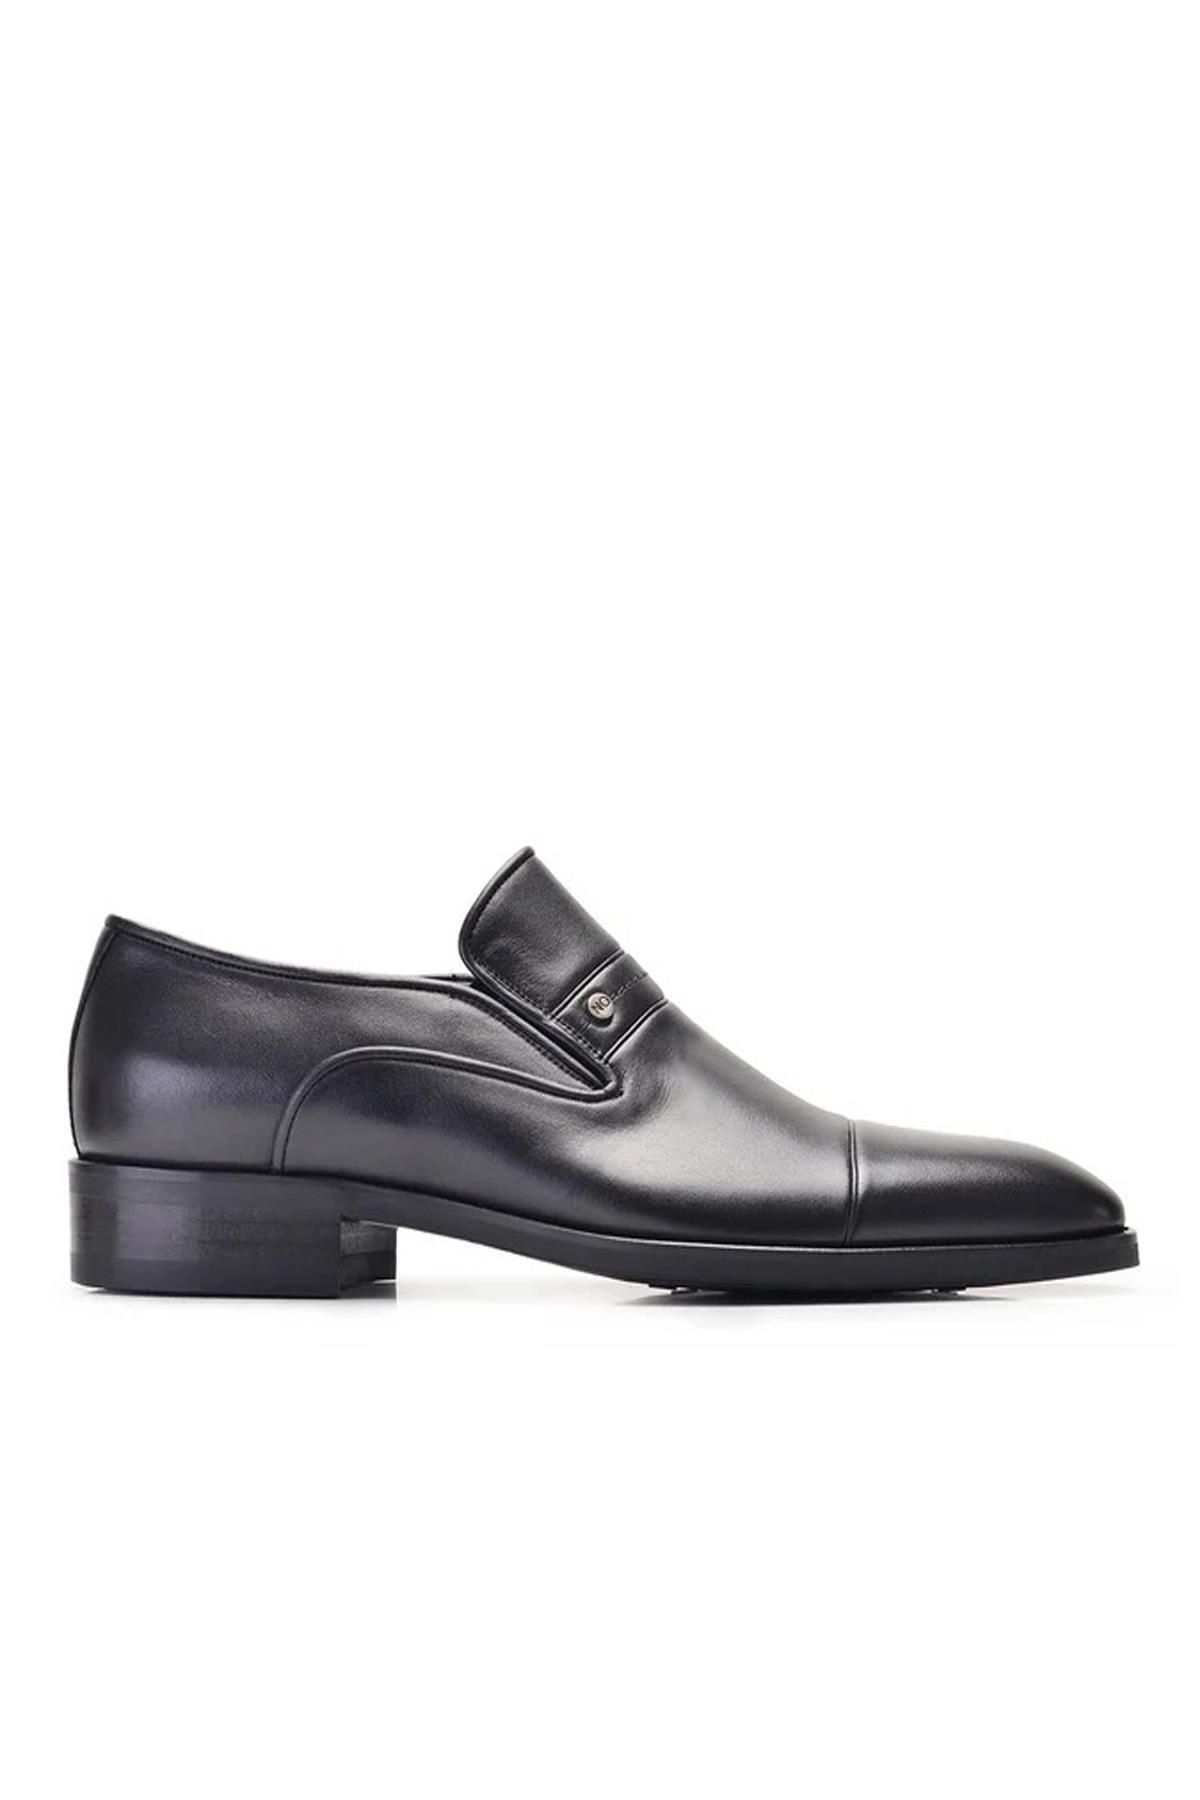 Nevzat Onay 6923-223 Erkek Klasik Ayakkabı - Siyah